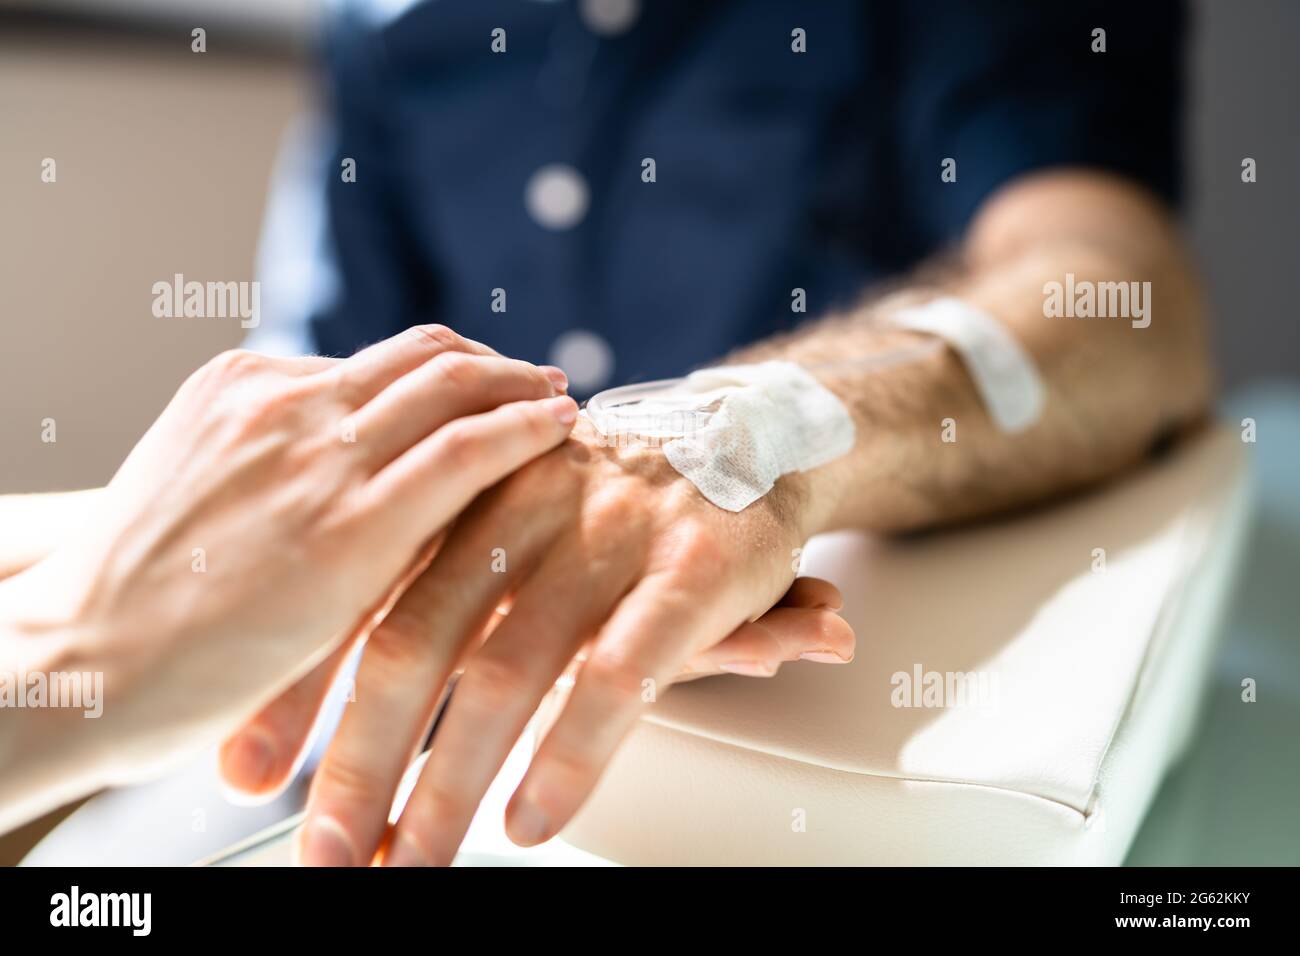 L'infirmière ou le médecin examine le cathéter patient pour oncologie pour la chimiothérapie Banque D'Images